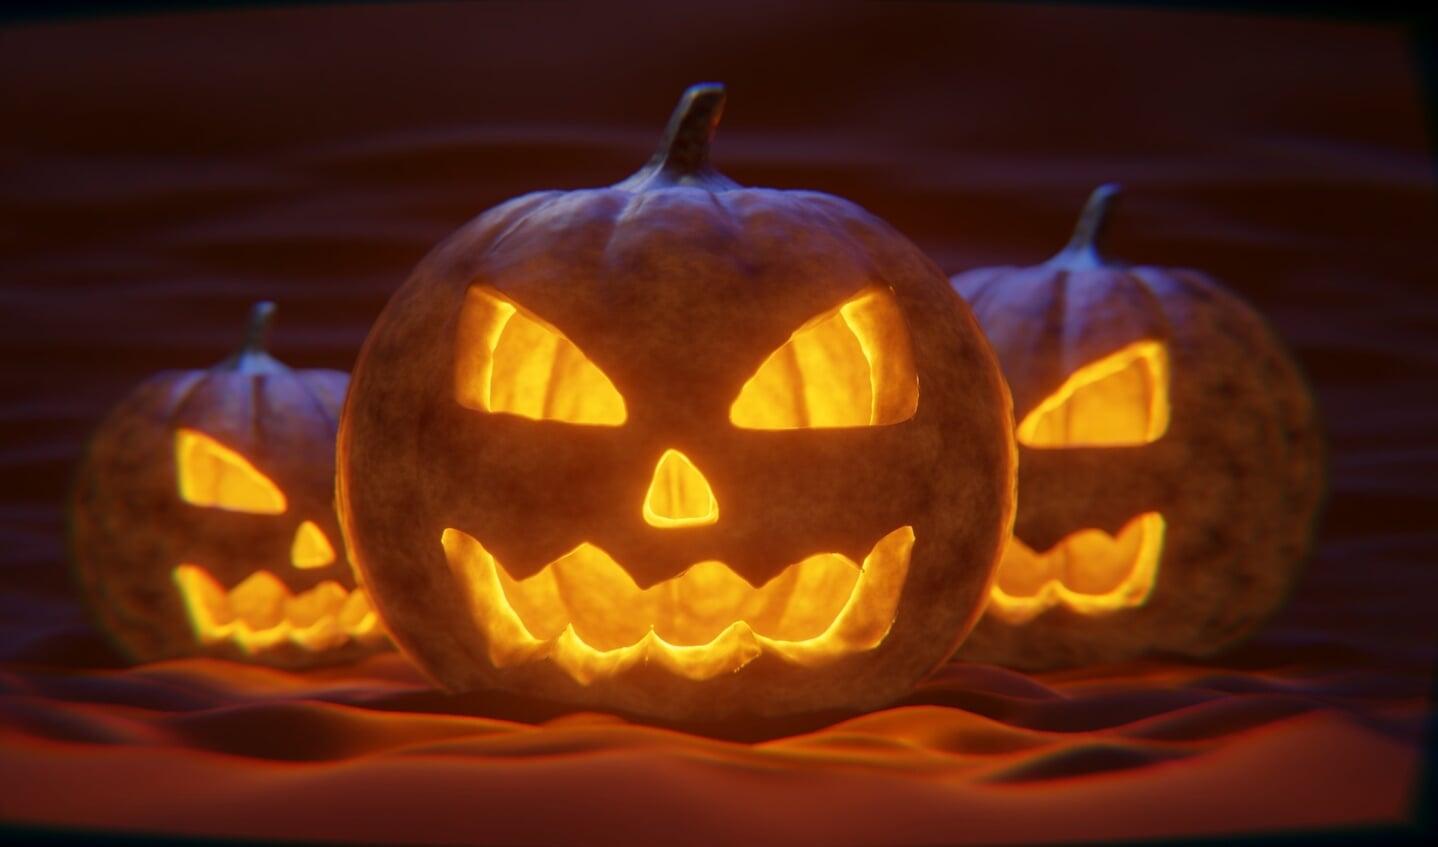 Vrijdag 28 oktober kunnen kinderen een cadeautje verdienen met een Halloween-speurtocht en geschminkt worden in Oud Rijswijk.